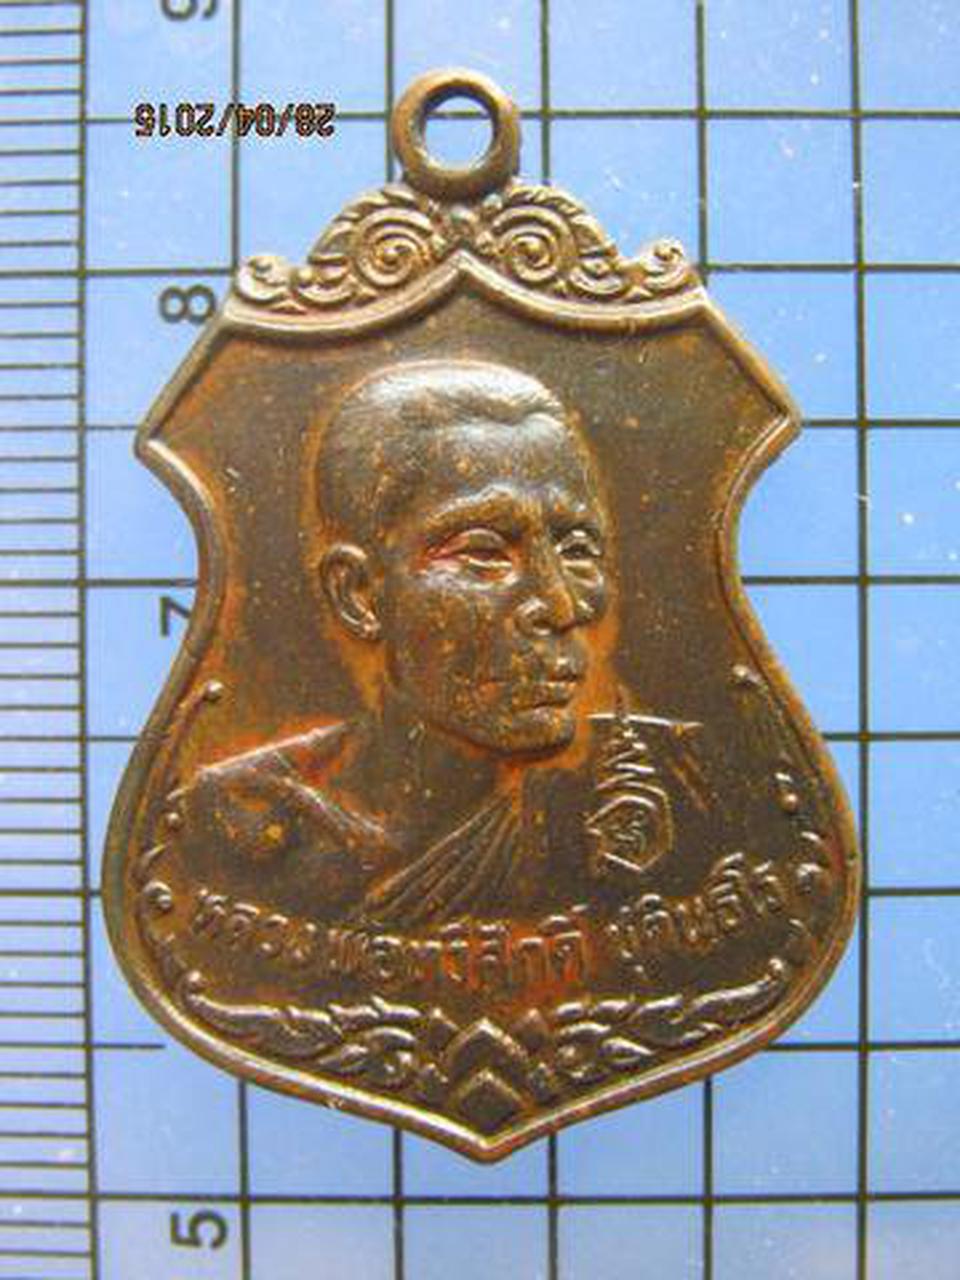 1864 เหรียญหลวงพ่อทวีศักดิ์ วัดศรีนวลธรรมวิมล หนองแขม กรุงเท รูปเล็กที่ 2